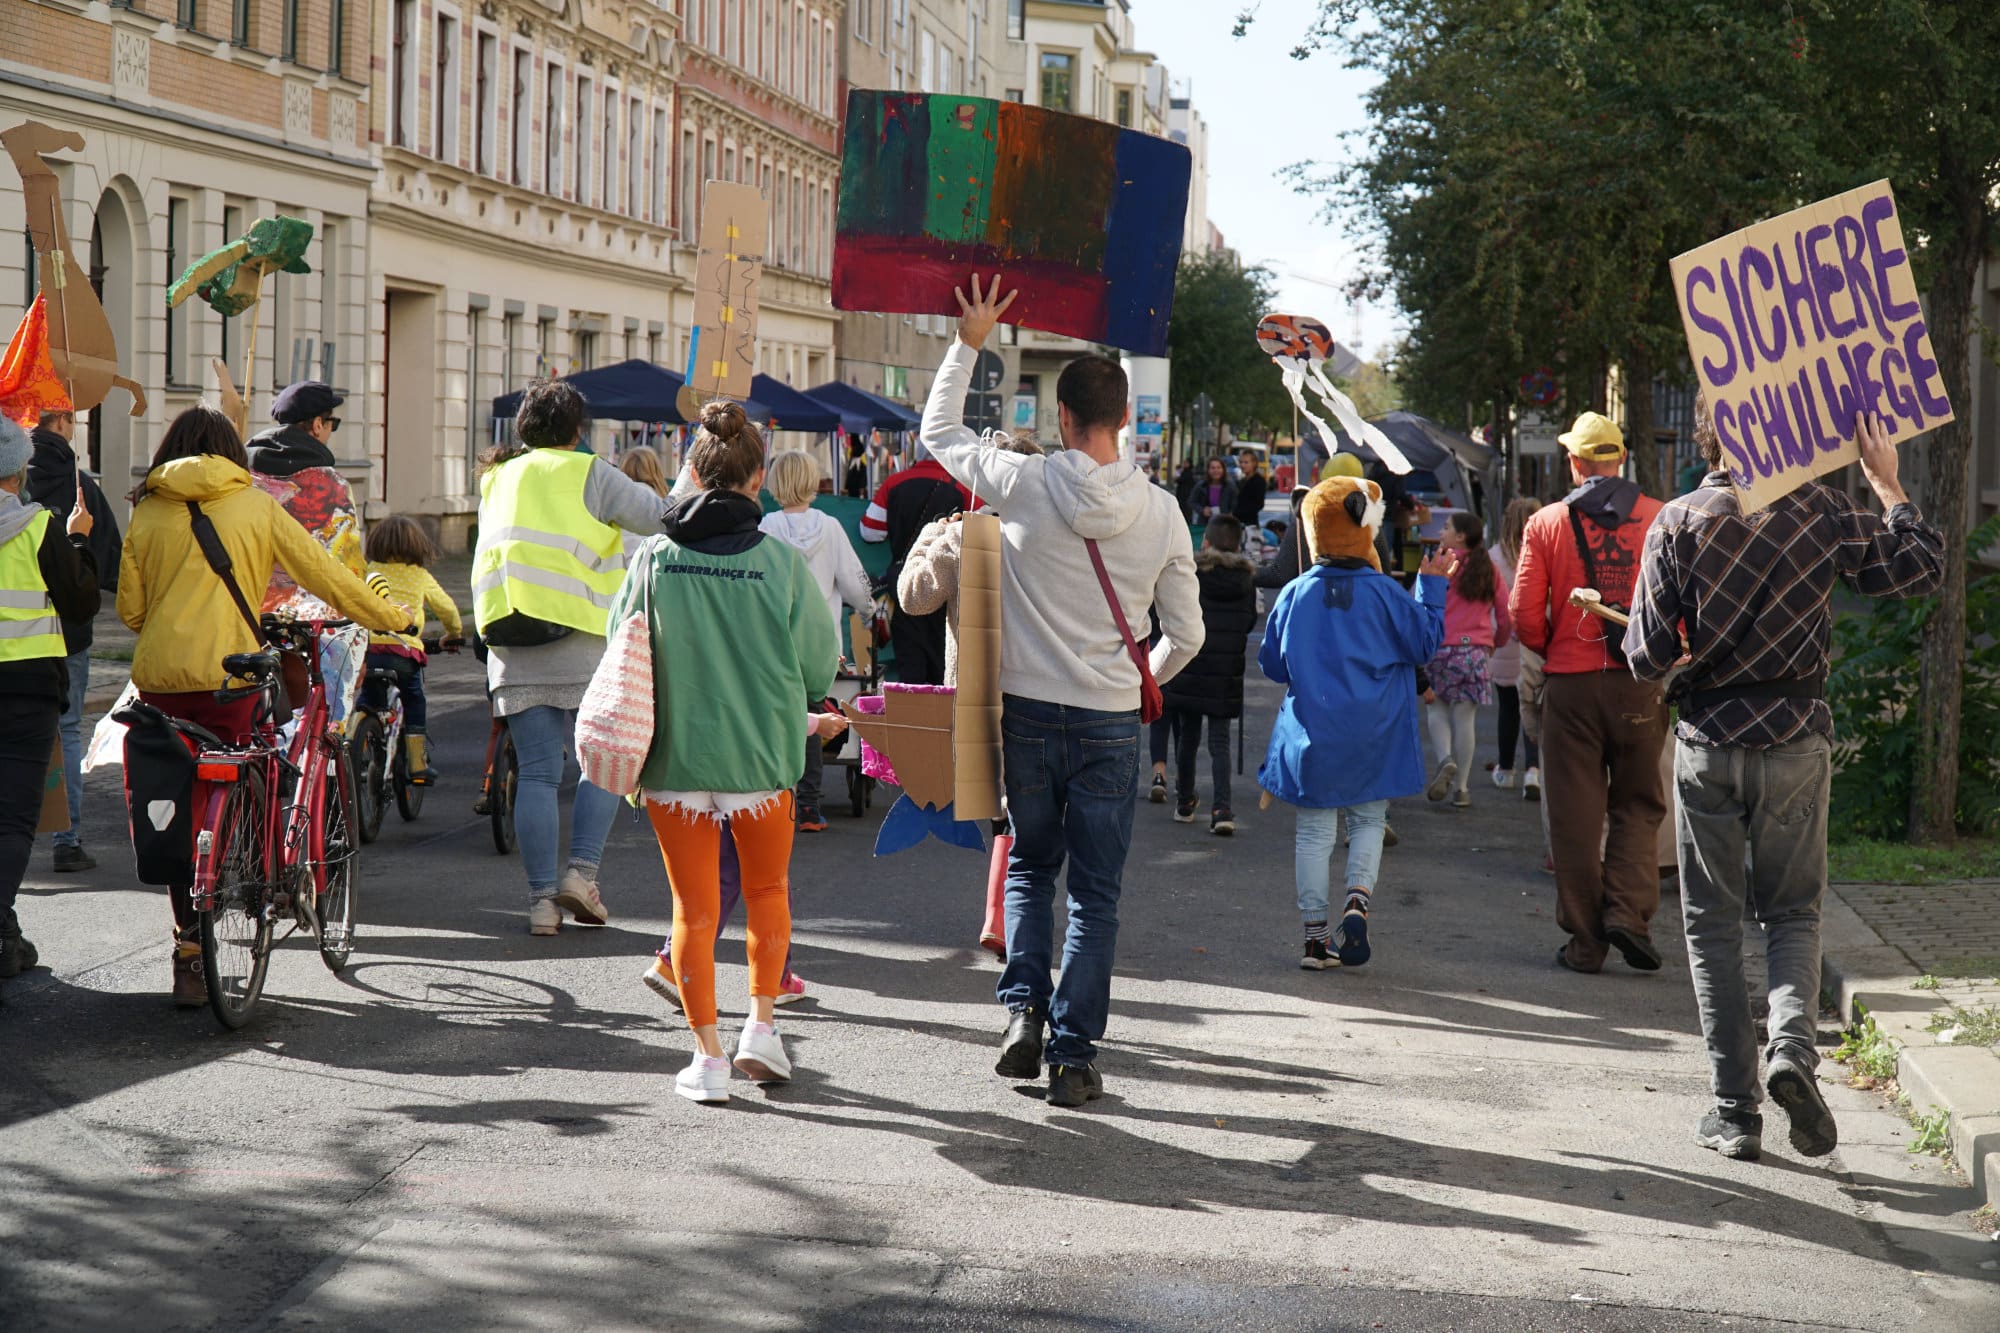 Vorfahrt für Kinder ist eines der wichtigsten Themen im Leipziger Osten, das die Superblocks lösen könnten. Bildquelle: Christoph Müller